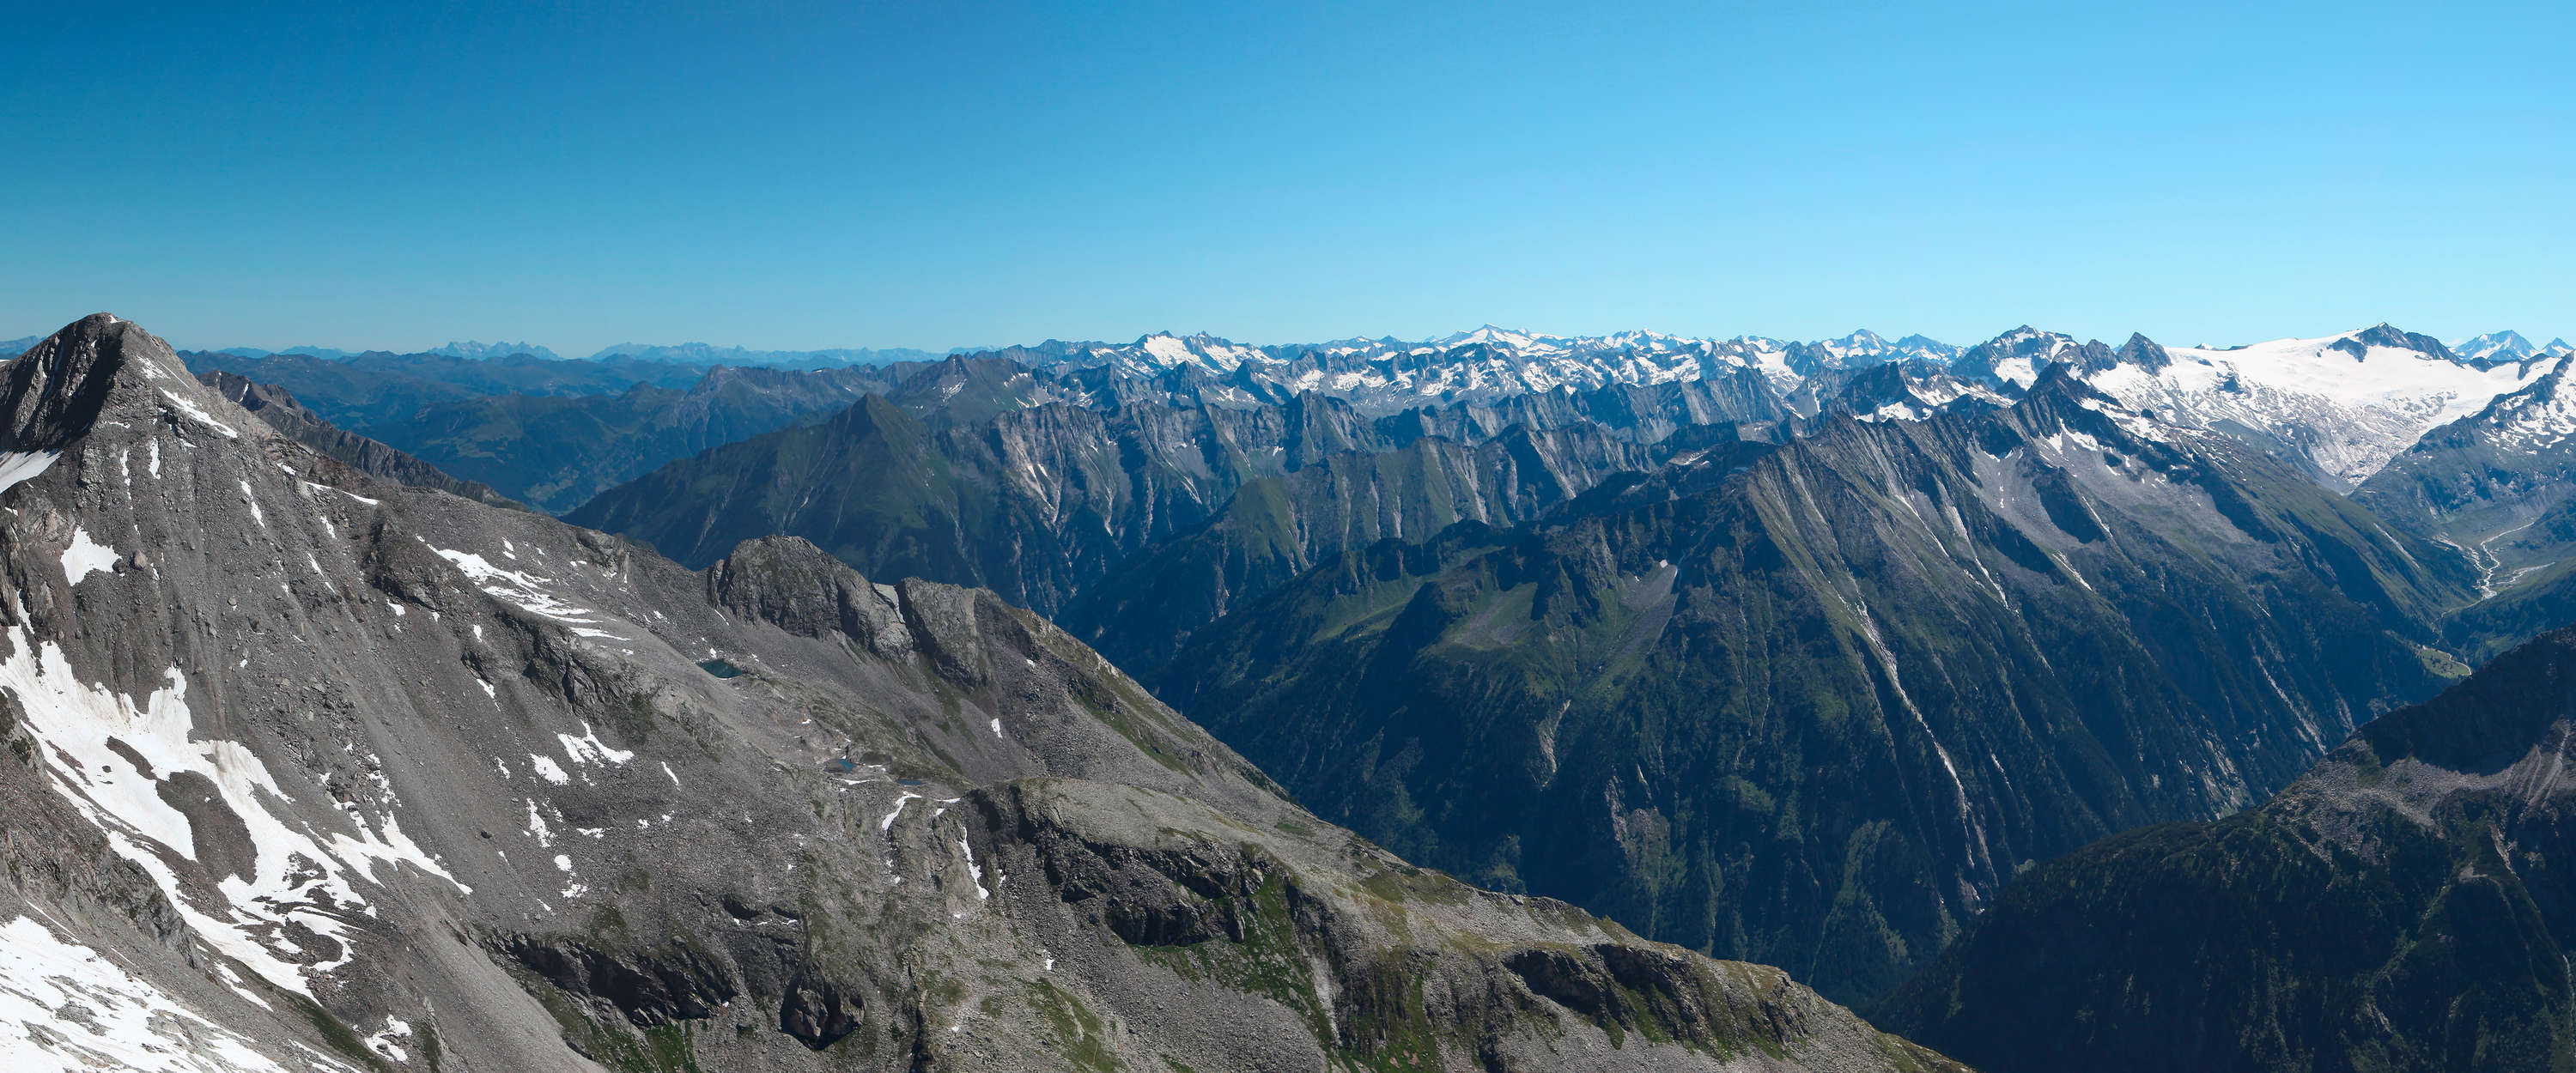             Panorama murale con aspre montagne alpine
        